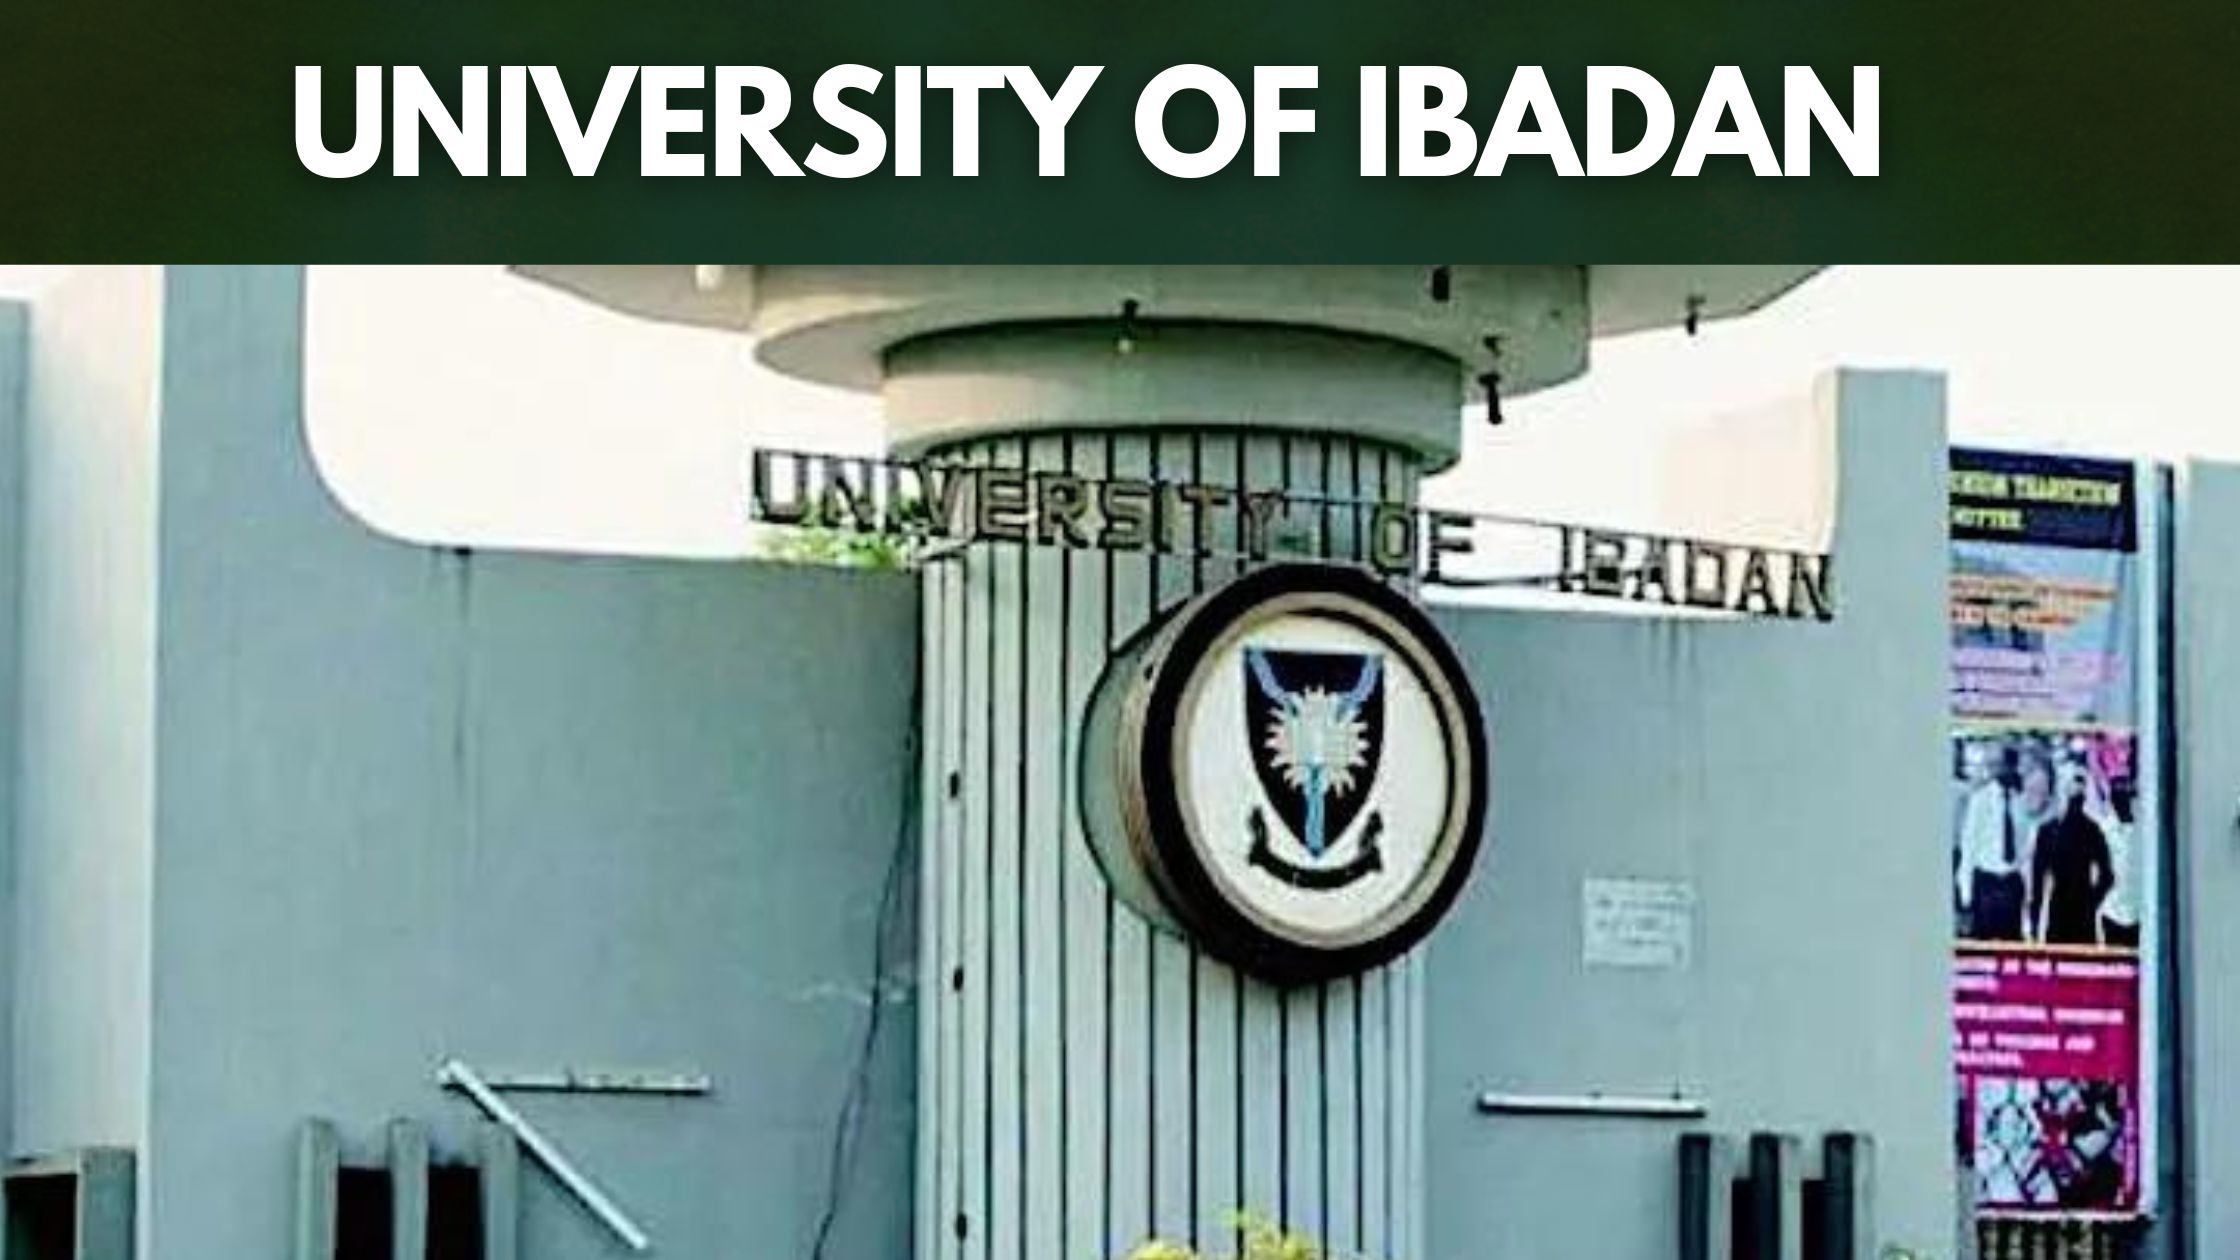 University of Ibadan - oldest Universities in Africa